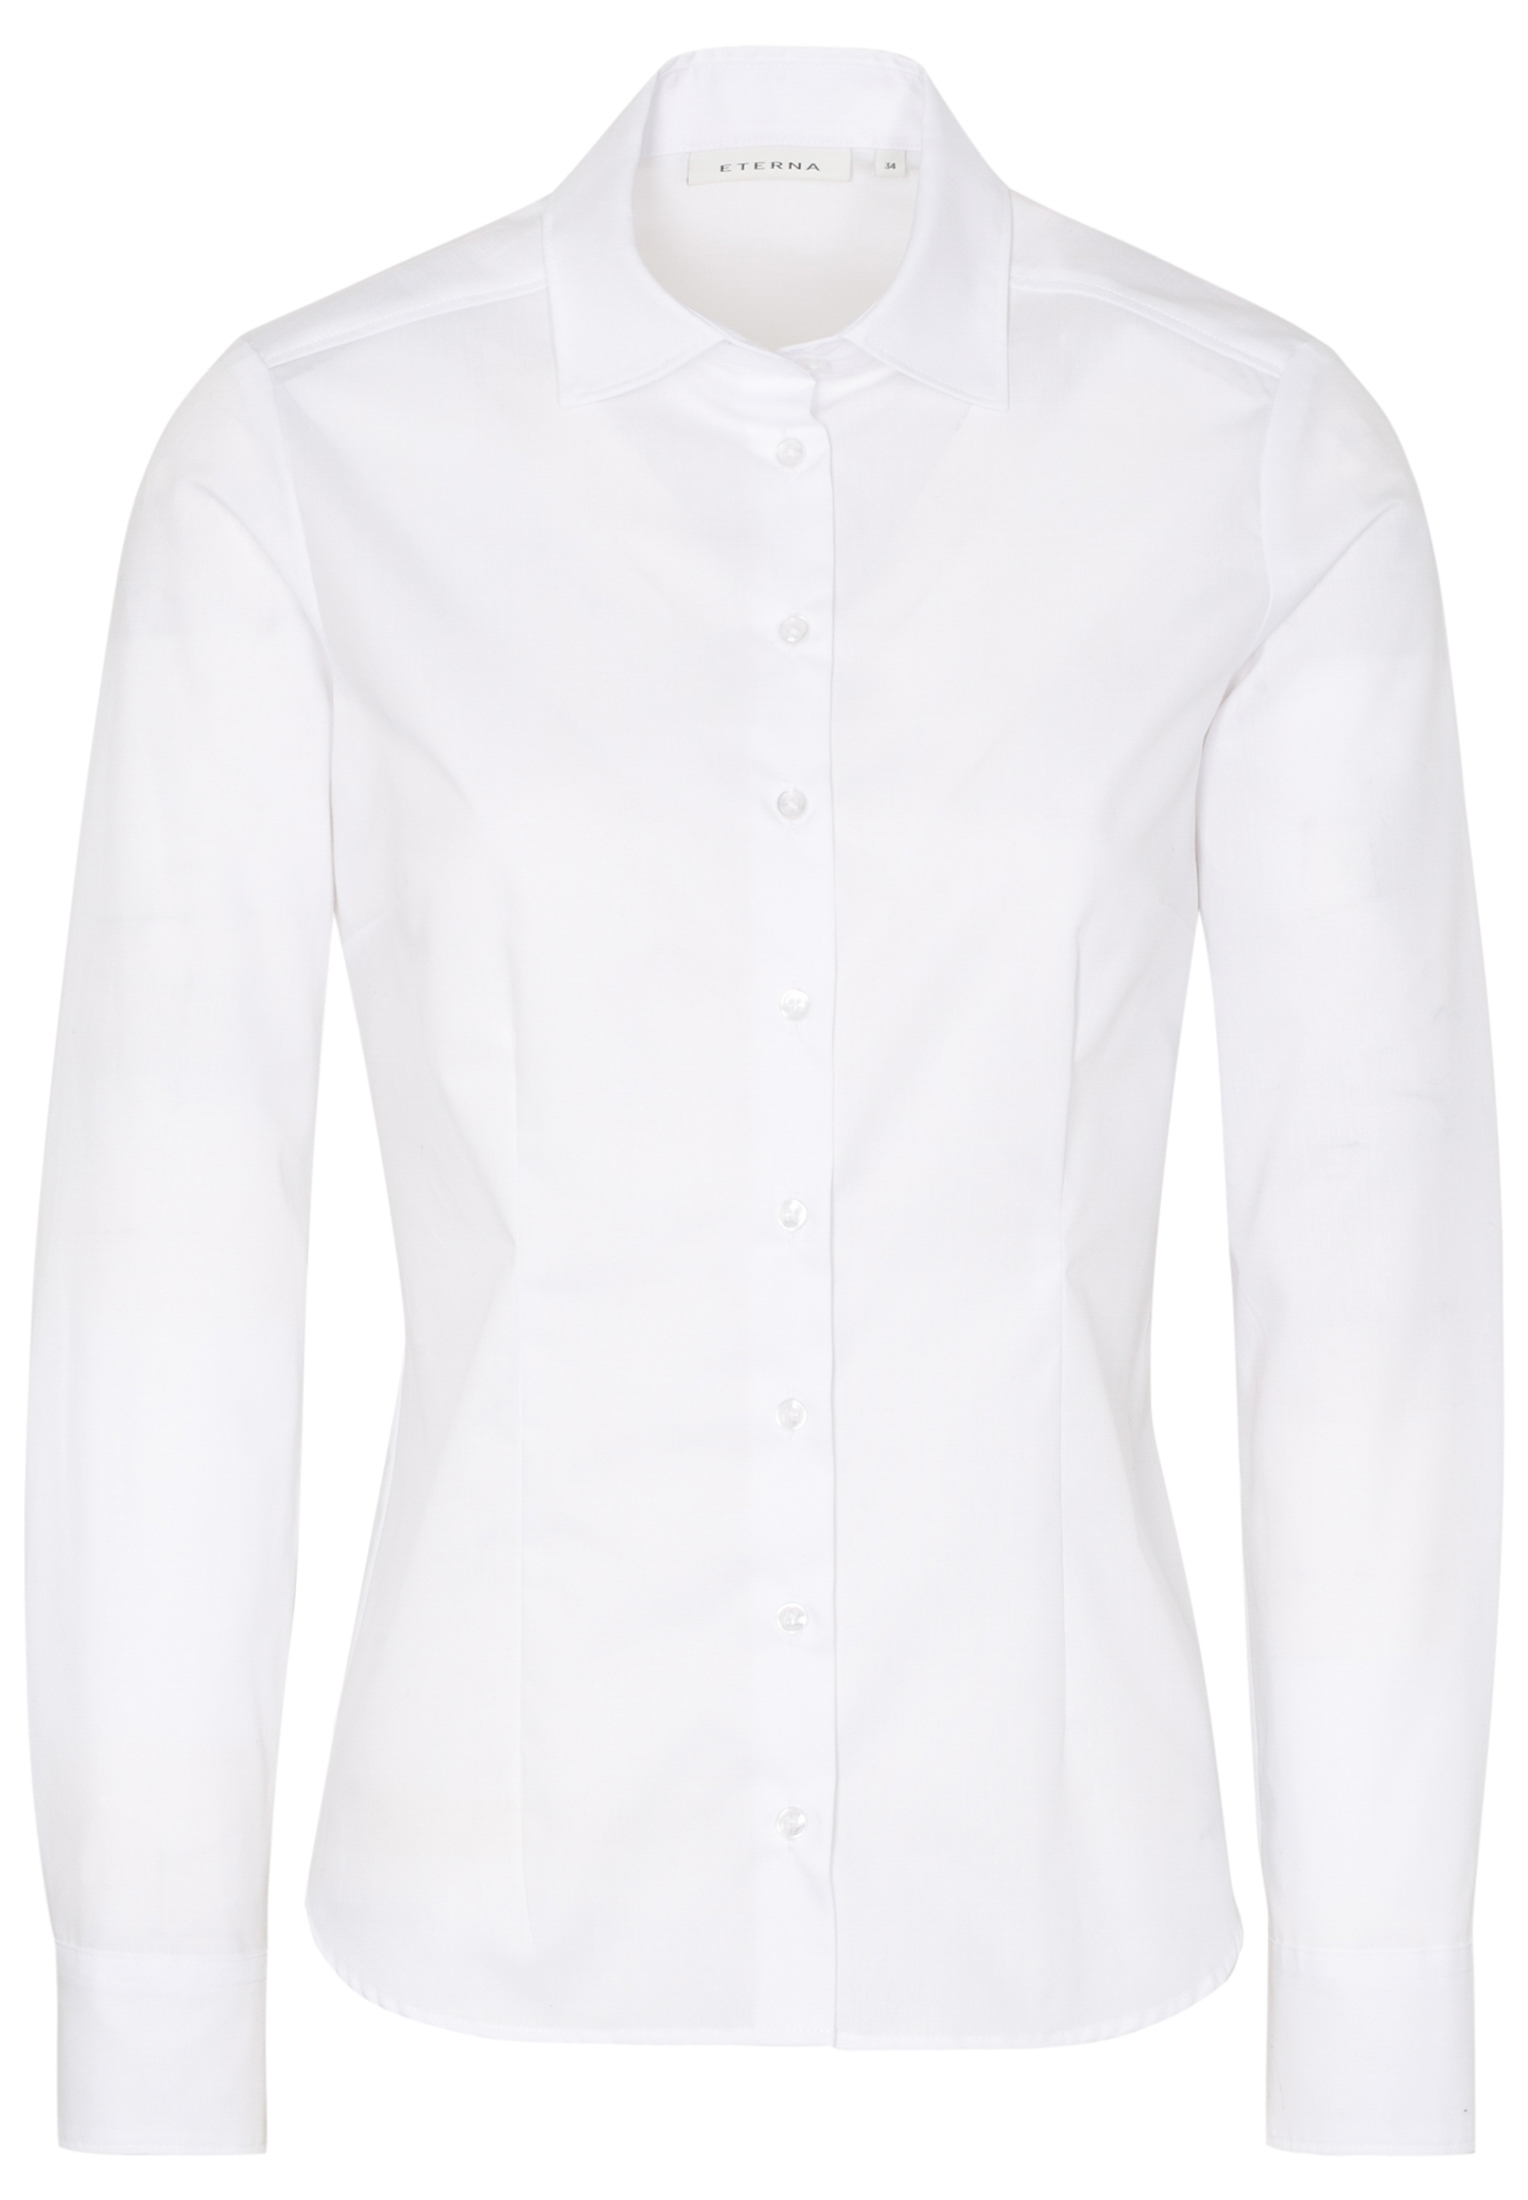 Bluse Popeline Langarm RF Eterna® Weiss Regular Fit 63 cm Hemd-Kragen 34  günstig besticken und bedrucken | cotton ART®